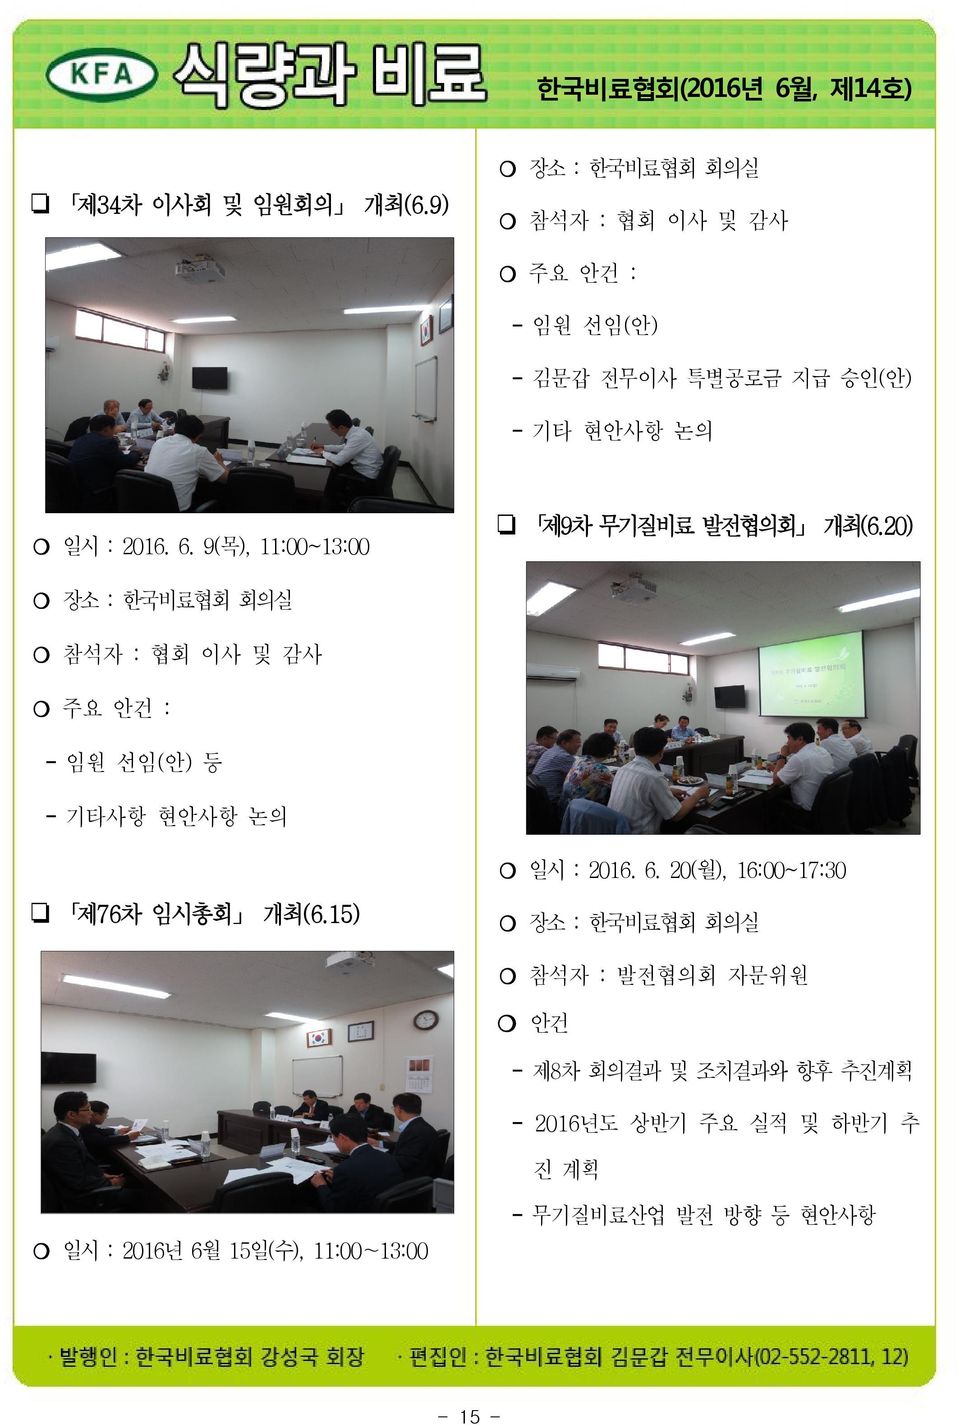 9(목), 11:00~13:00 제9차 무기질비료 발전협의회 개최(6.